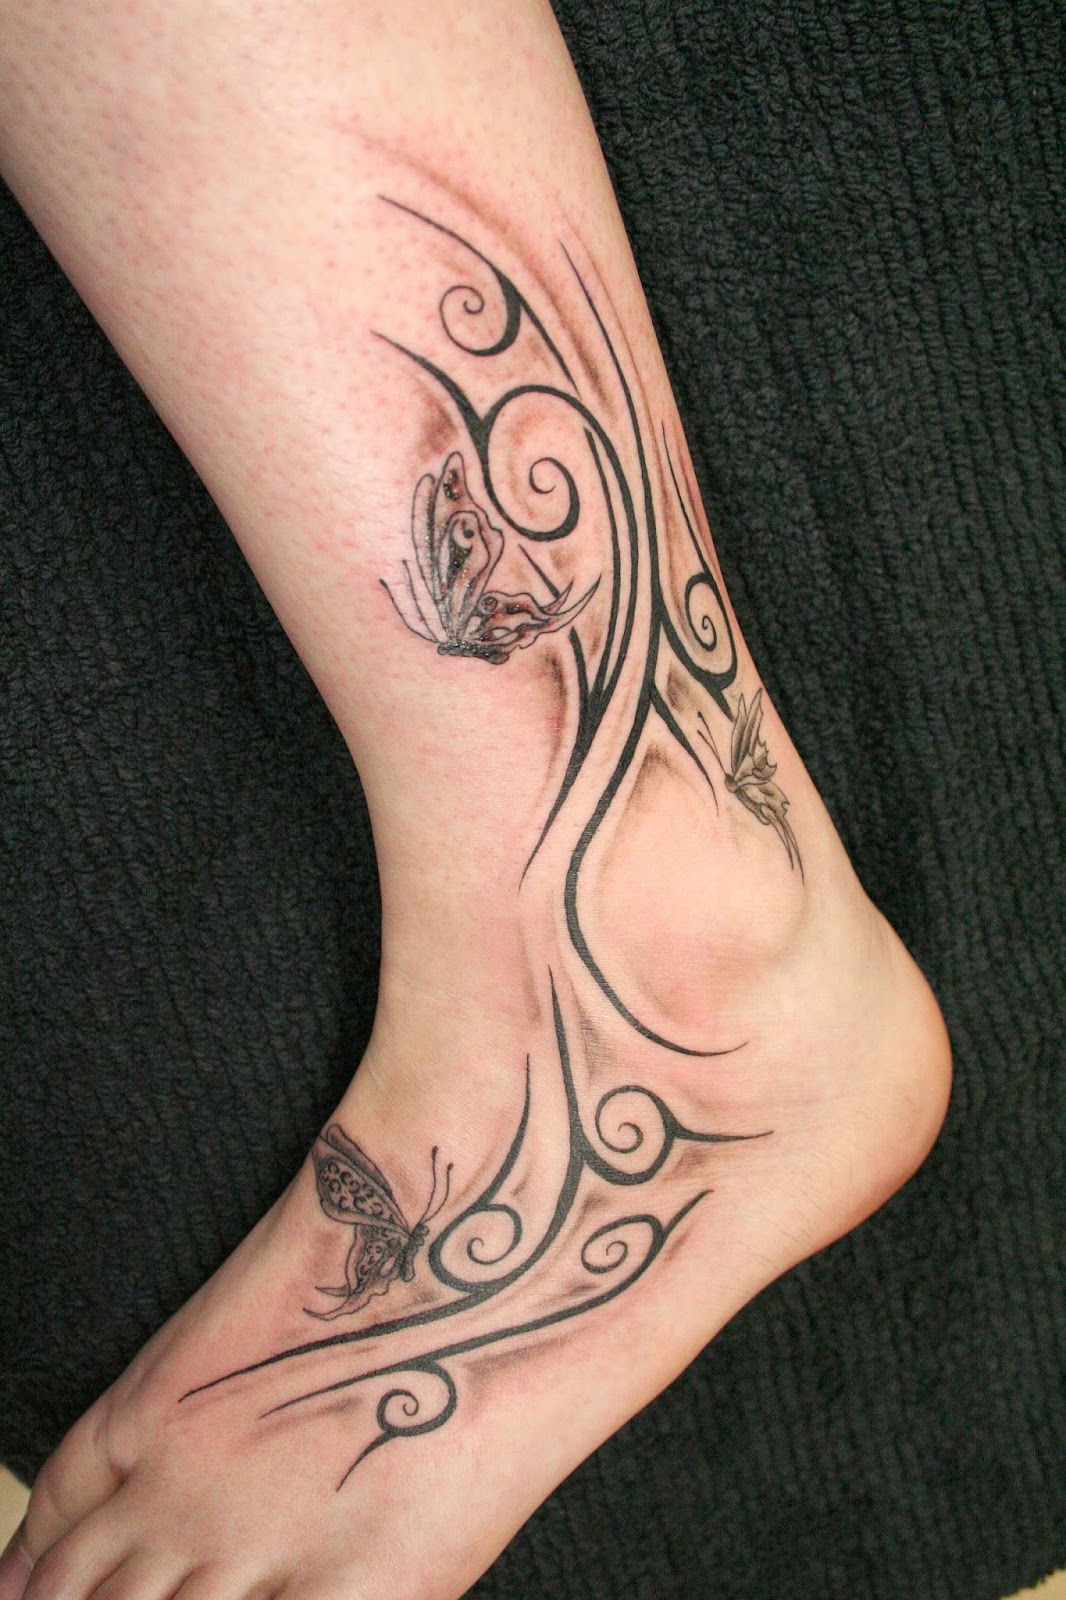 Tattooz Designs: Tribal Flower Tattoos Designs| Tribal Flower Tattoos Idea